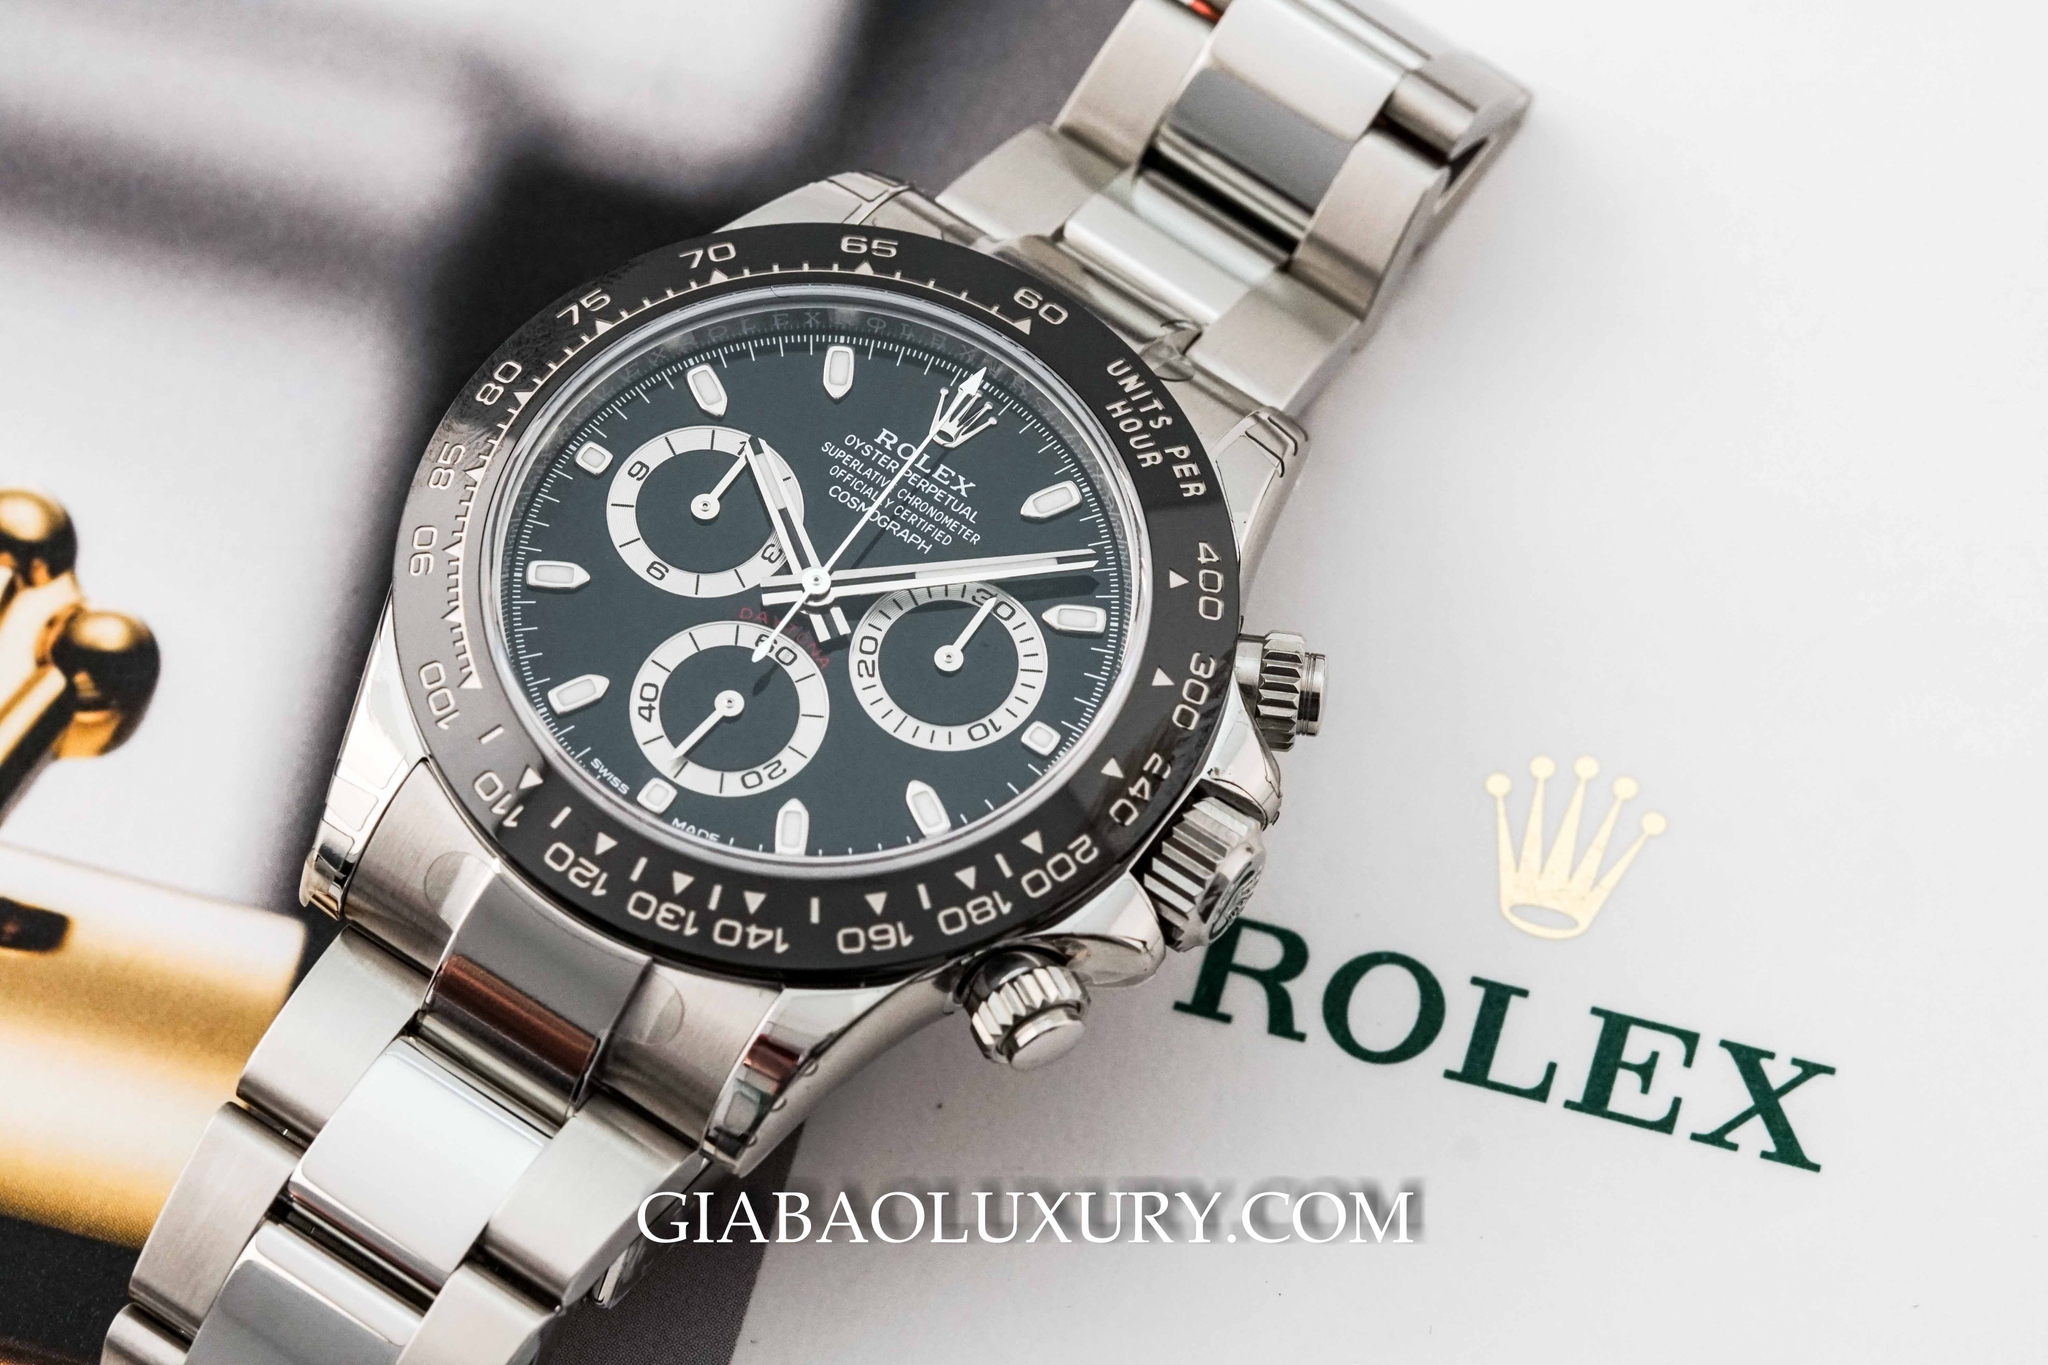 Rolex và biểu tượng vương miện 5 đỉnh - Câu chuyện thực hay chỉ là lời đồn hư cấu